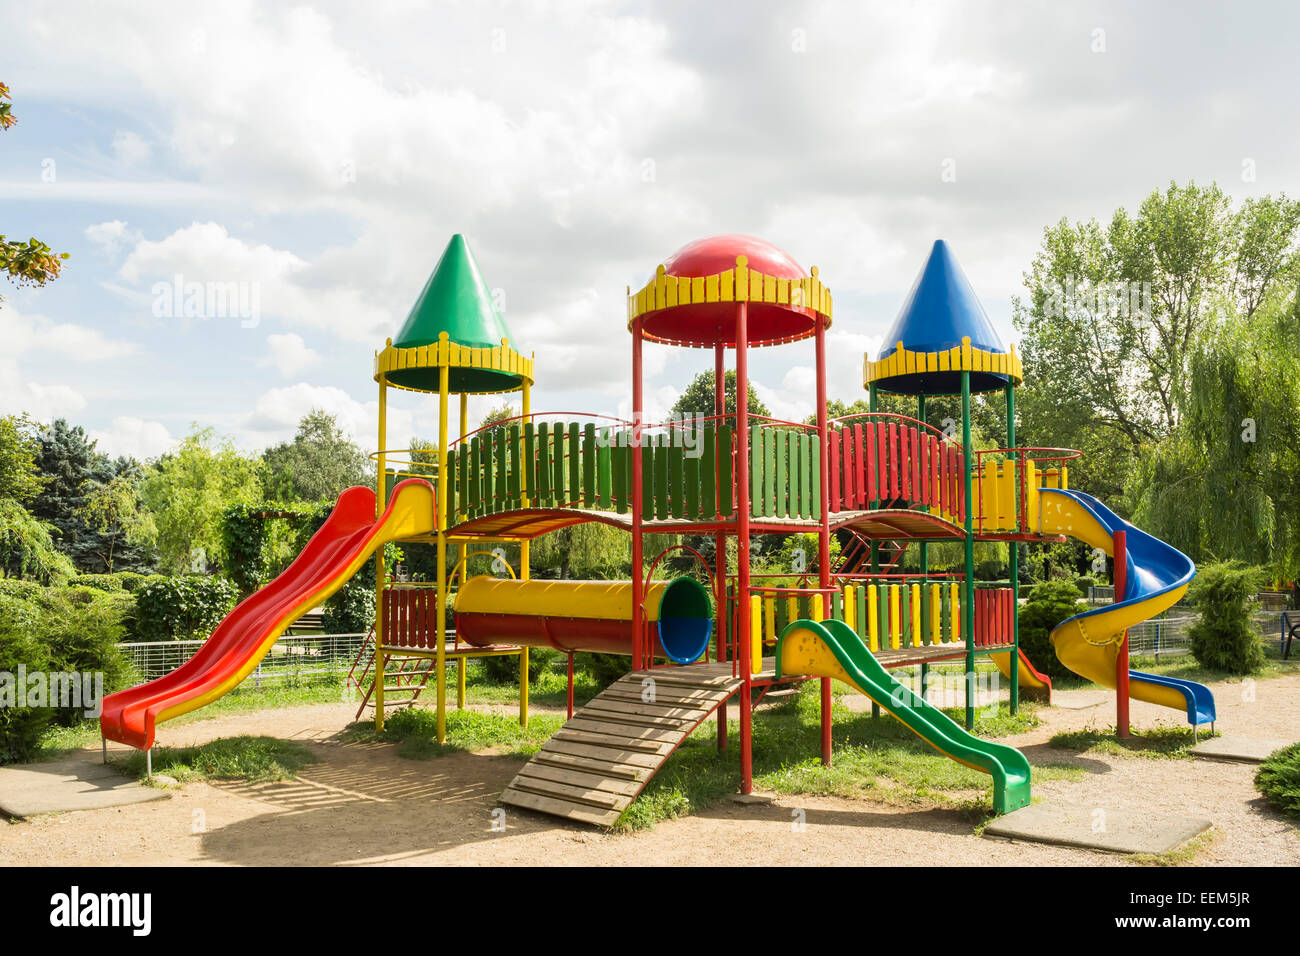 Terrain de jeux pour enfants avec château coloré comme la construction et l'équipement de jeu Banque D'Images